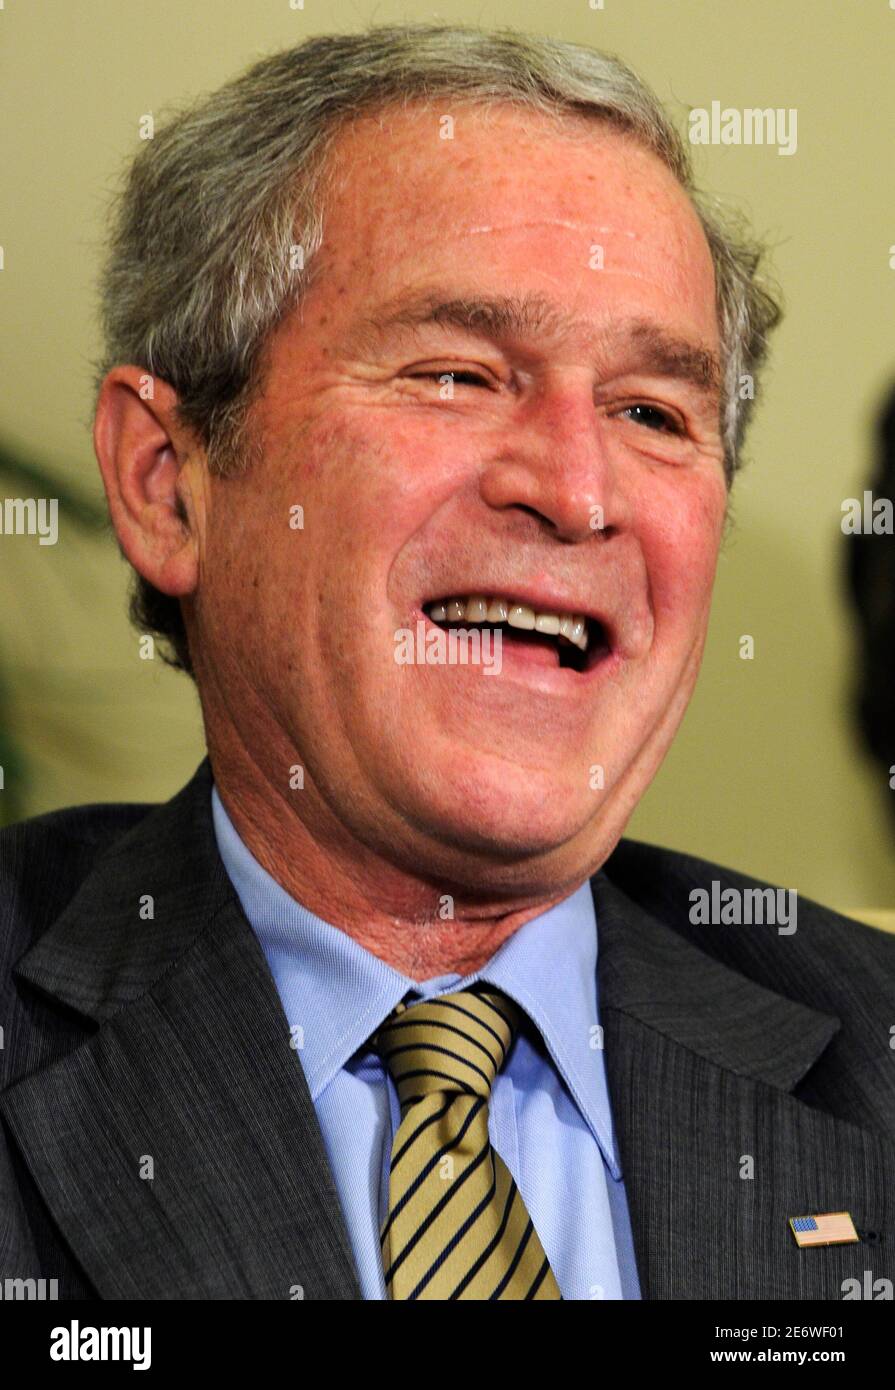 US-Präsident George W. Bush lacht über Bemerkungen zu den Medien von El Salvadors Präsident Tony Saca nach einem bilateralen Treffen im Oval Office im Weißen Haus, 16. Dezember 2008.     REUTERS/Mike Theiler (Vereinigte Staaten) Stockfoto